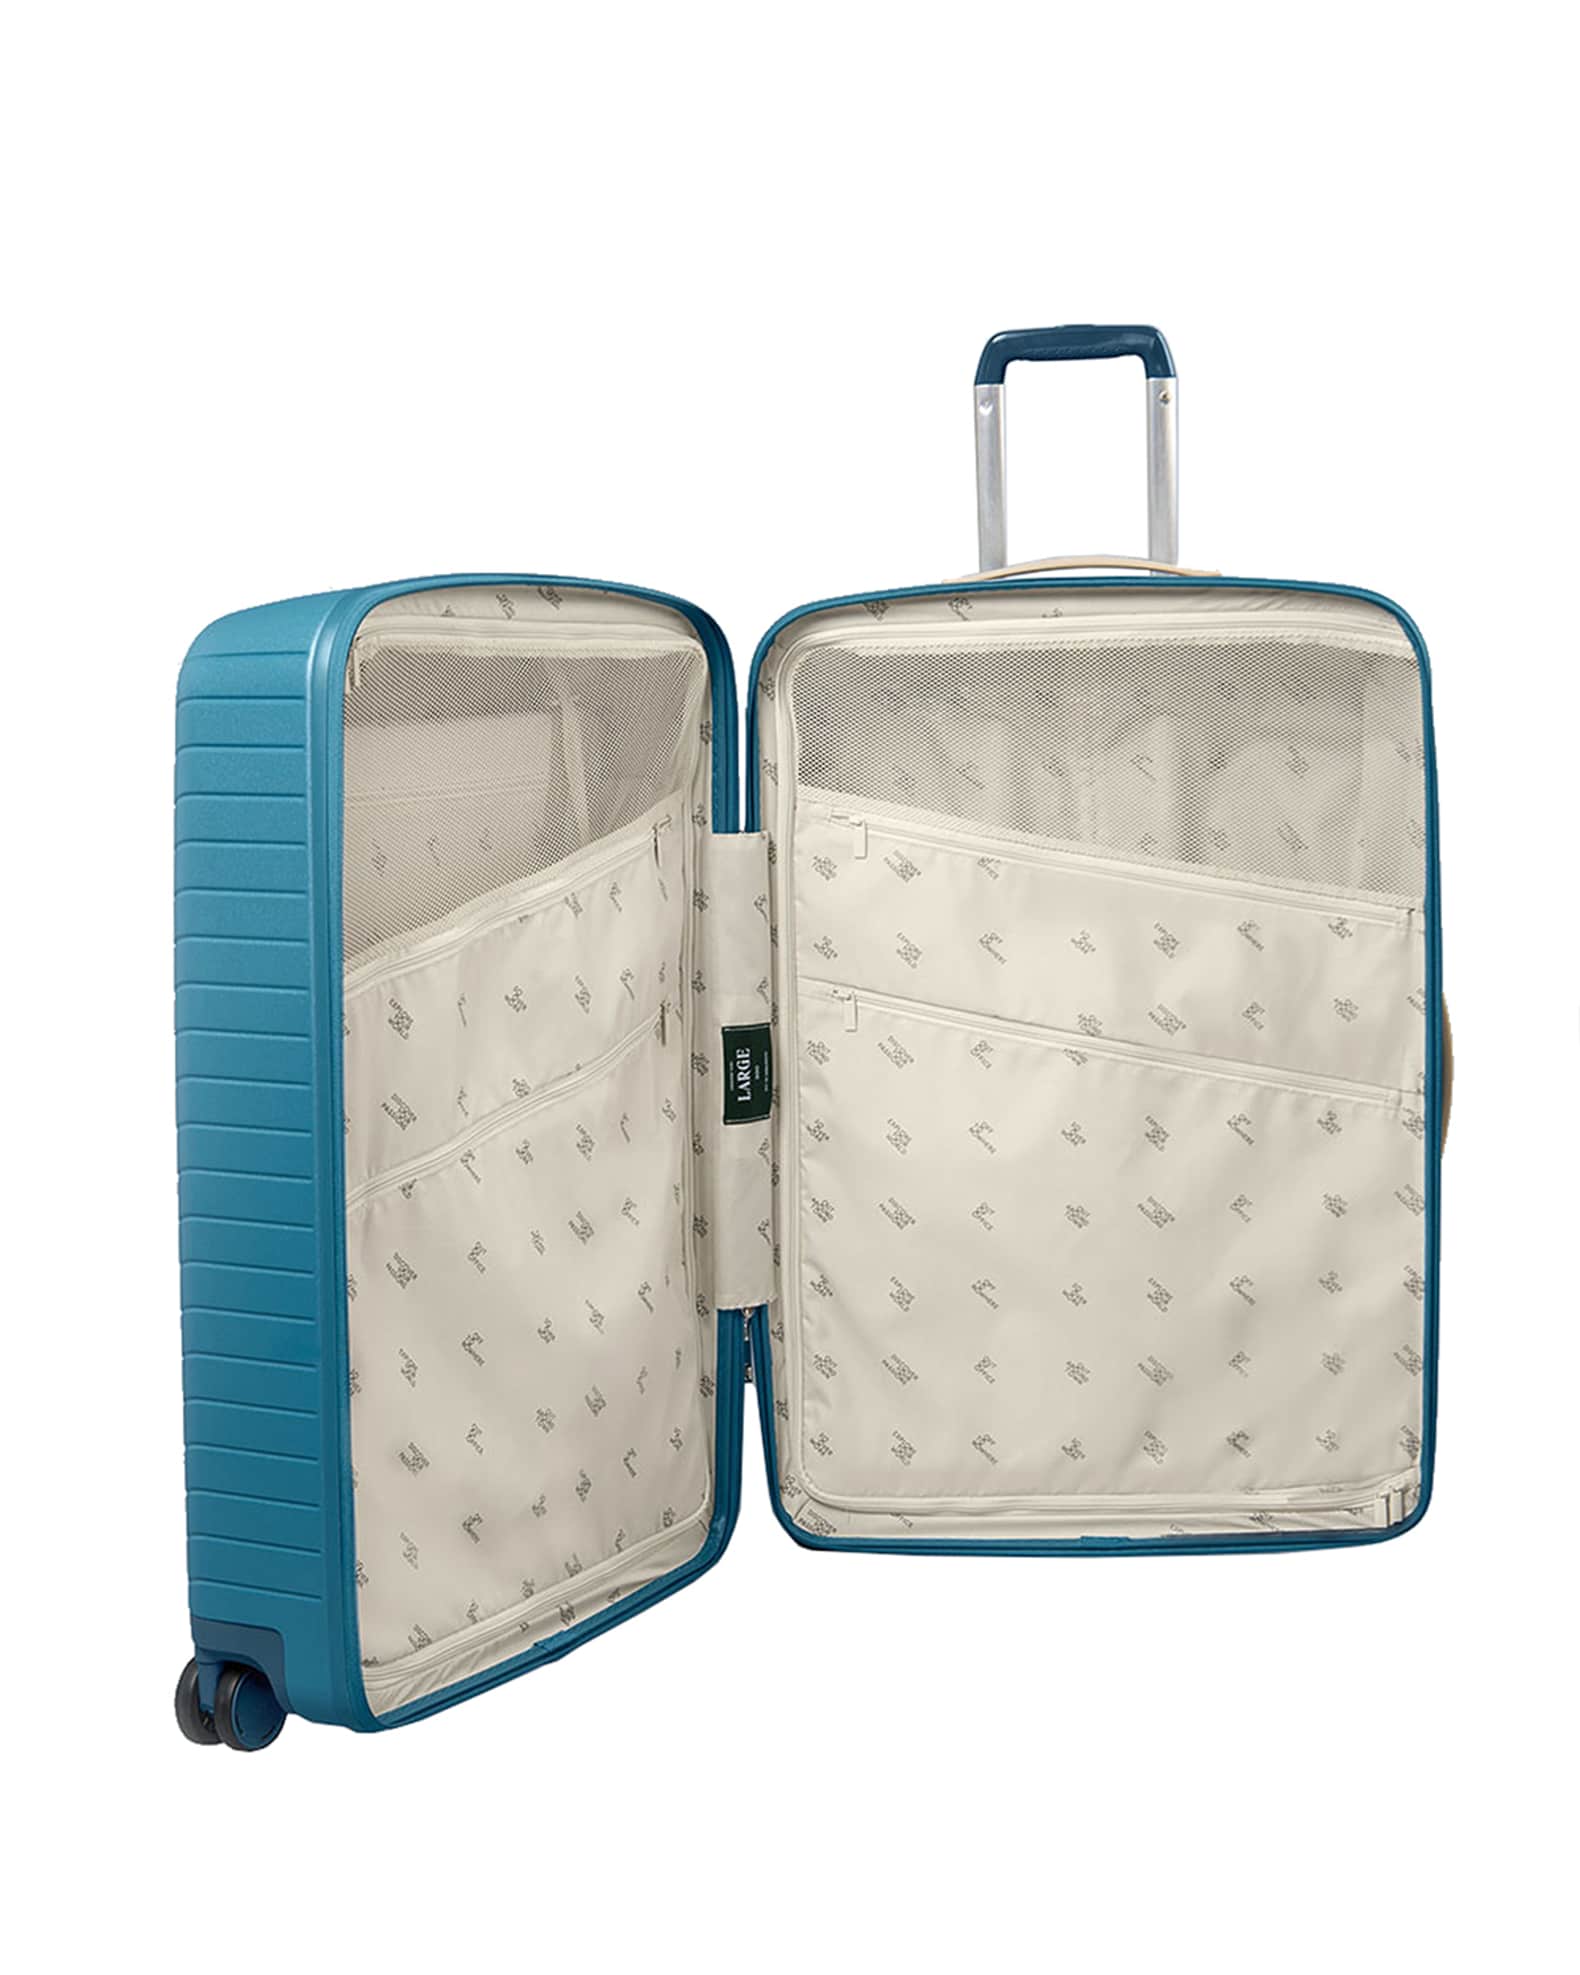 Luggage Sets, Designer Luggage & Spinner Luggage, Neiman Marcus